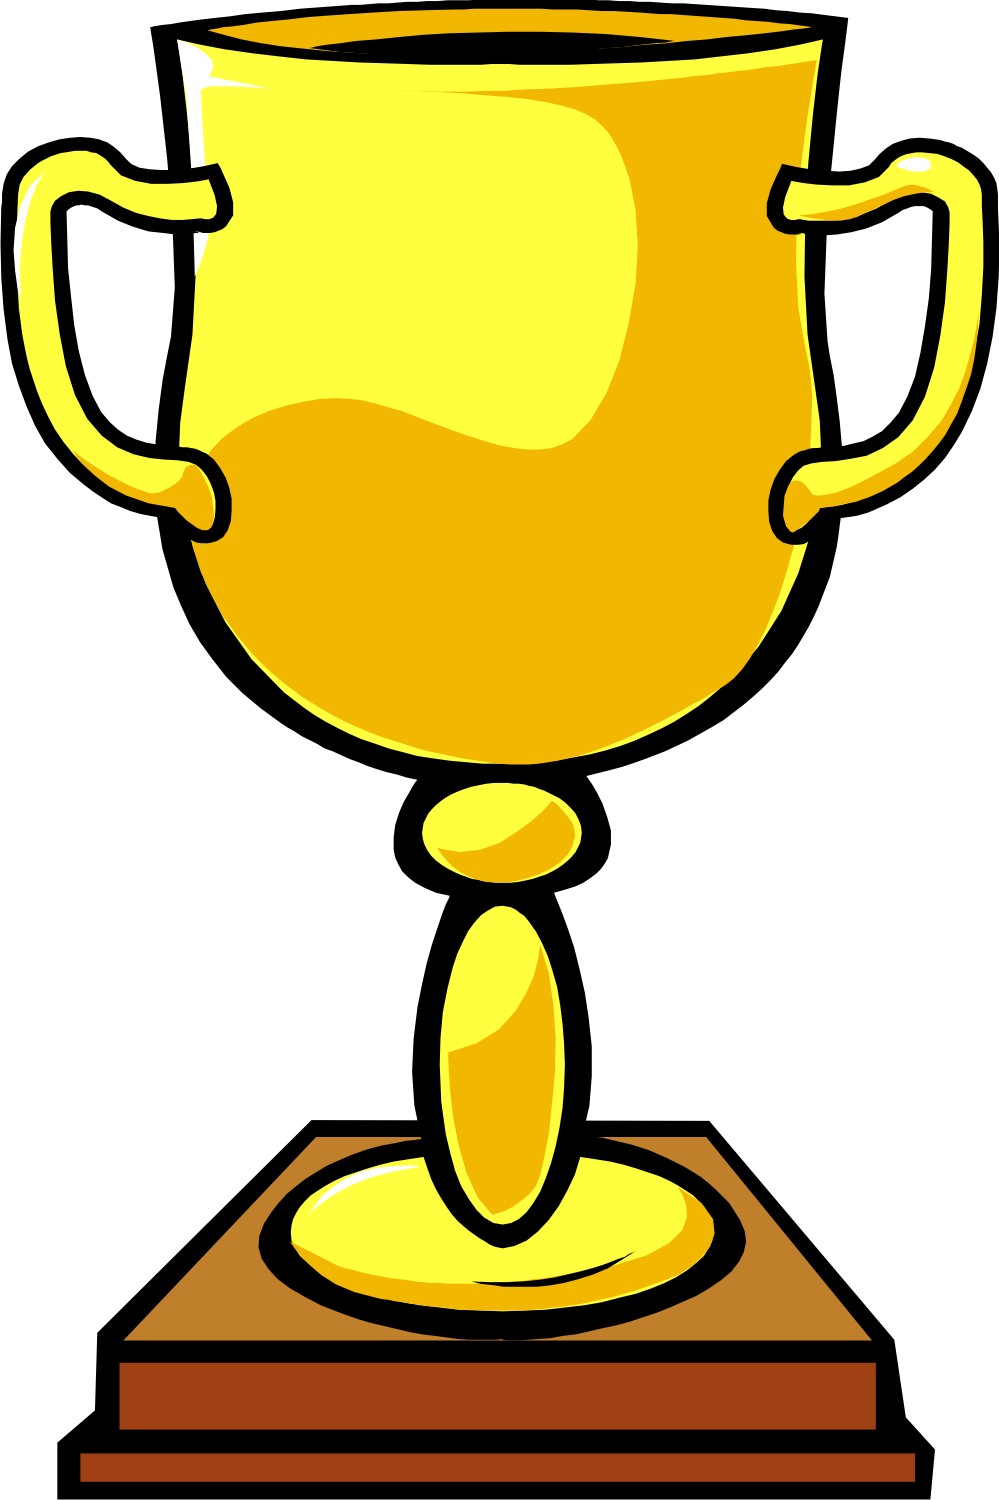 Soccer Trophies Clipart - ClipArt Best